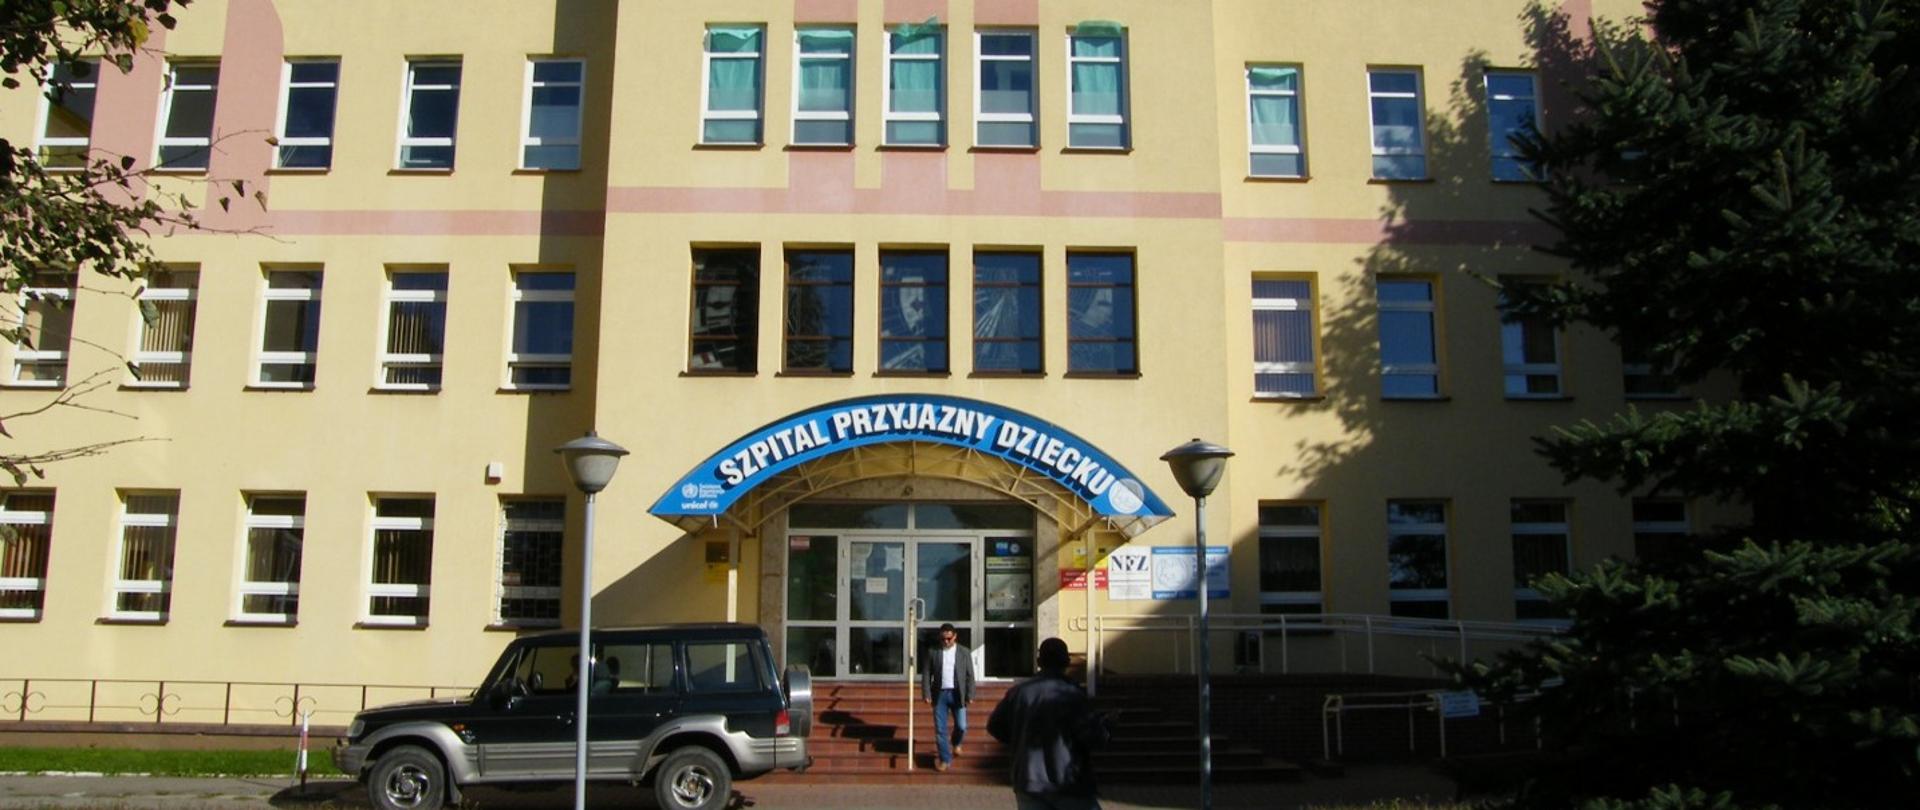 Samodzielny Publiczny Zakład Opieki Zdrowotnej w Bielsku Podlaskim